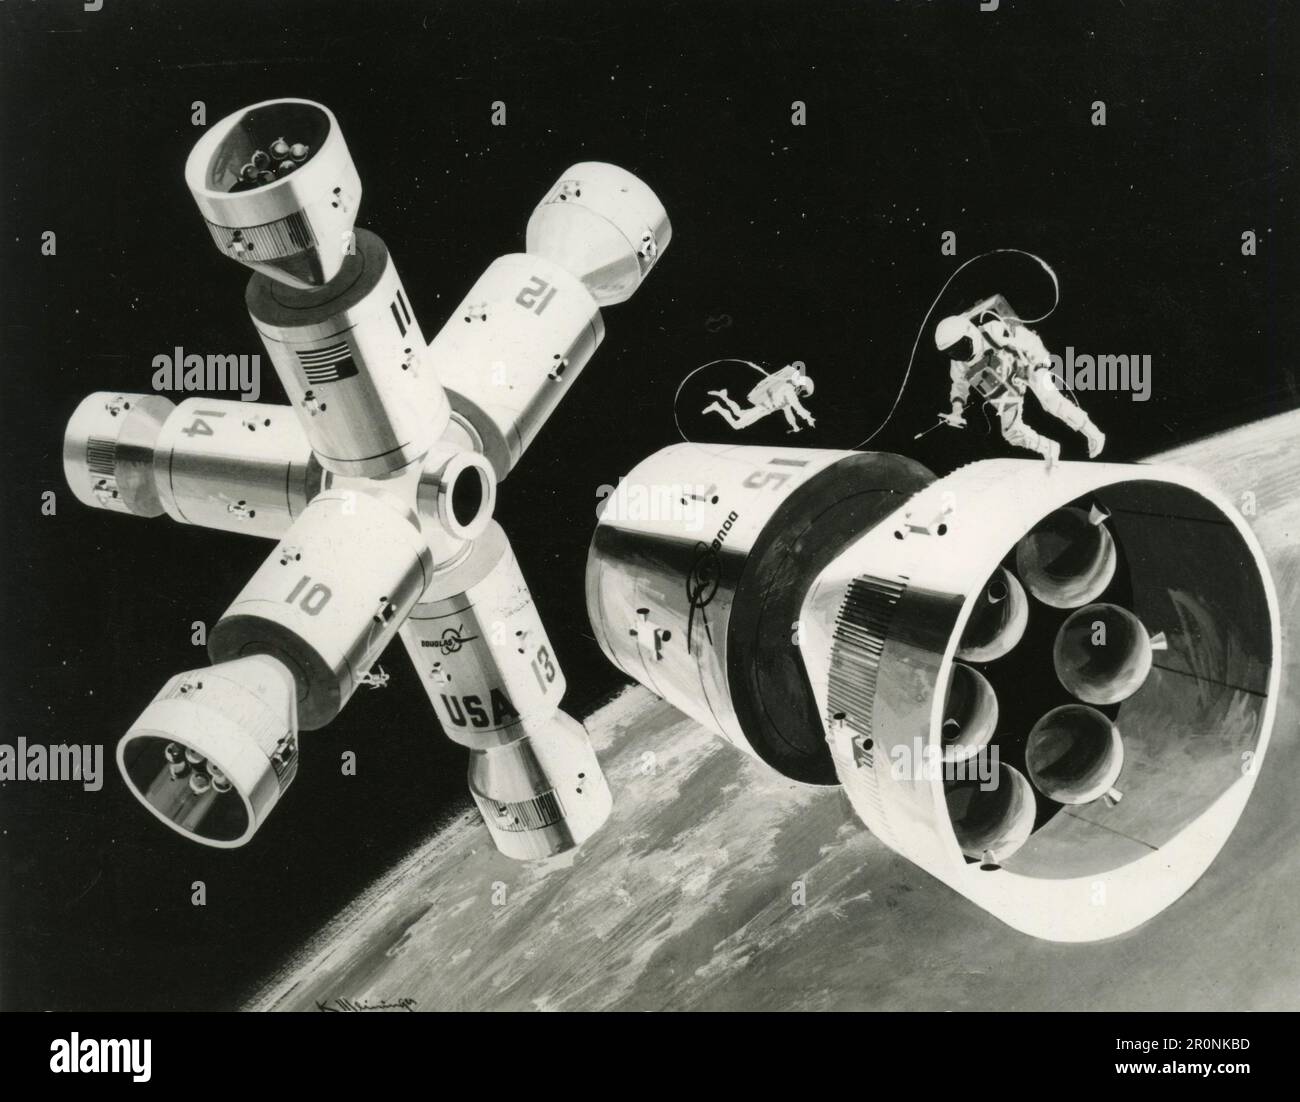 Rendering artistico di una stazione spaziale modulare immaginata, USA 1960s Foto Stock